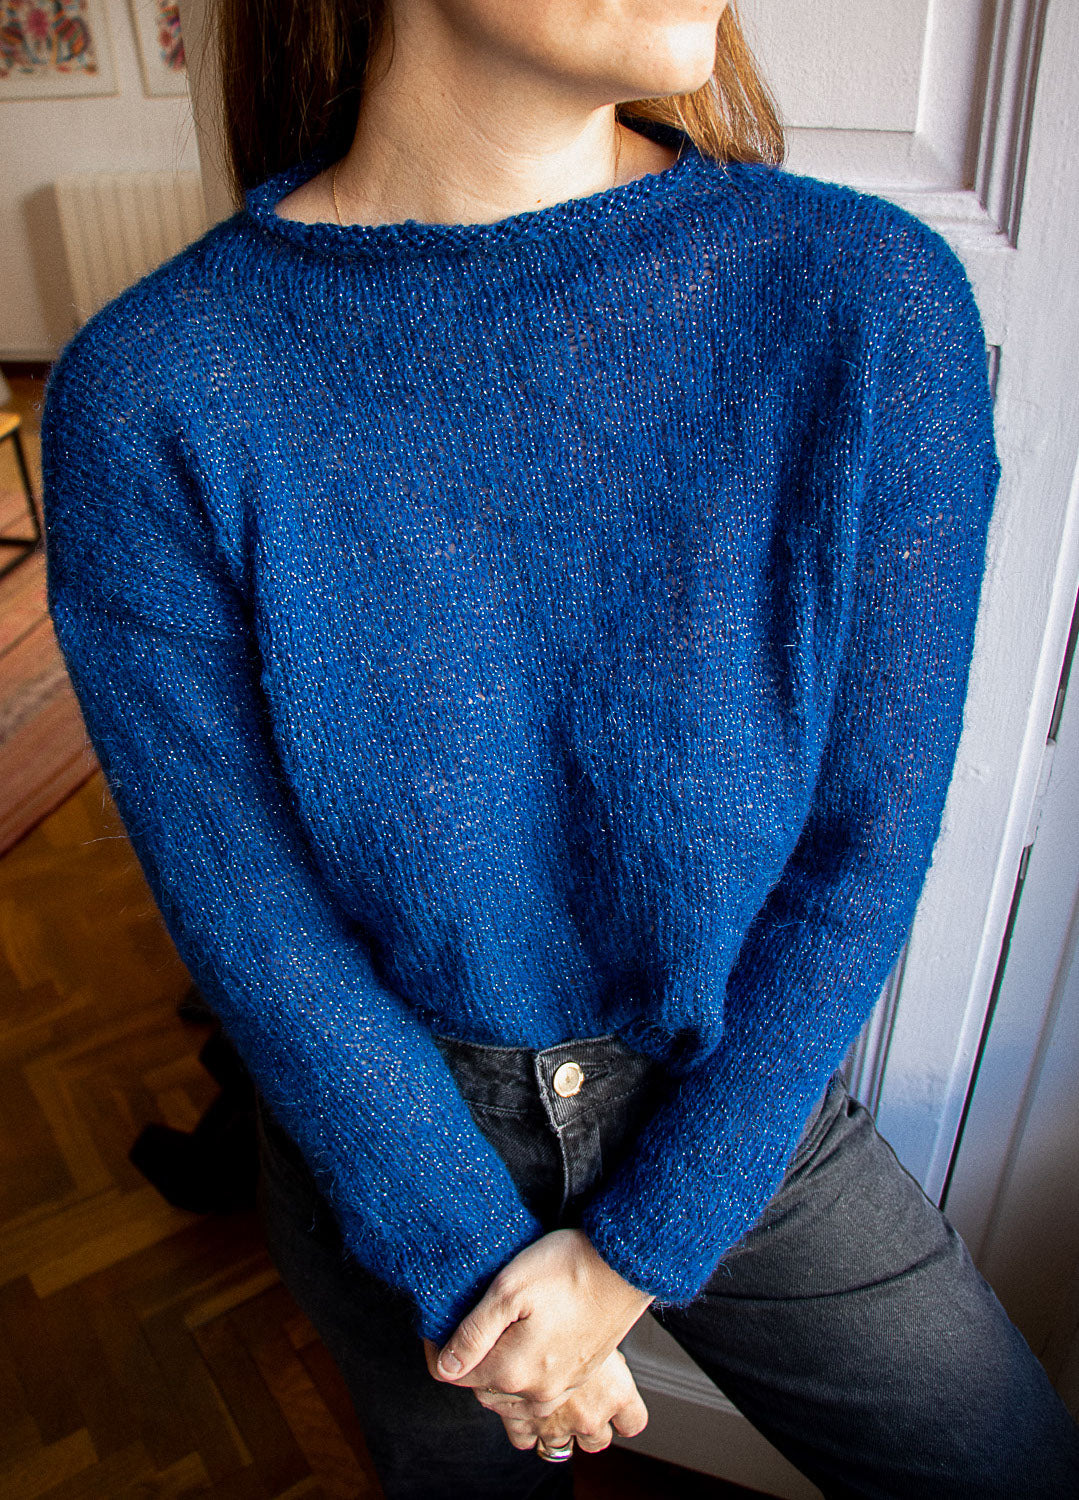 Glowing Sweater Kit